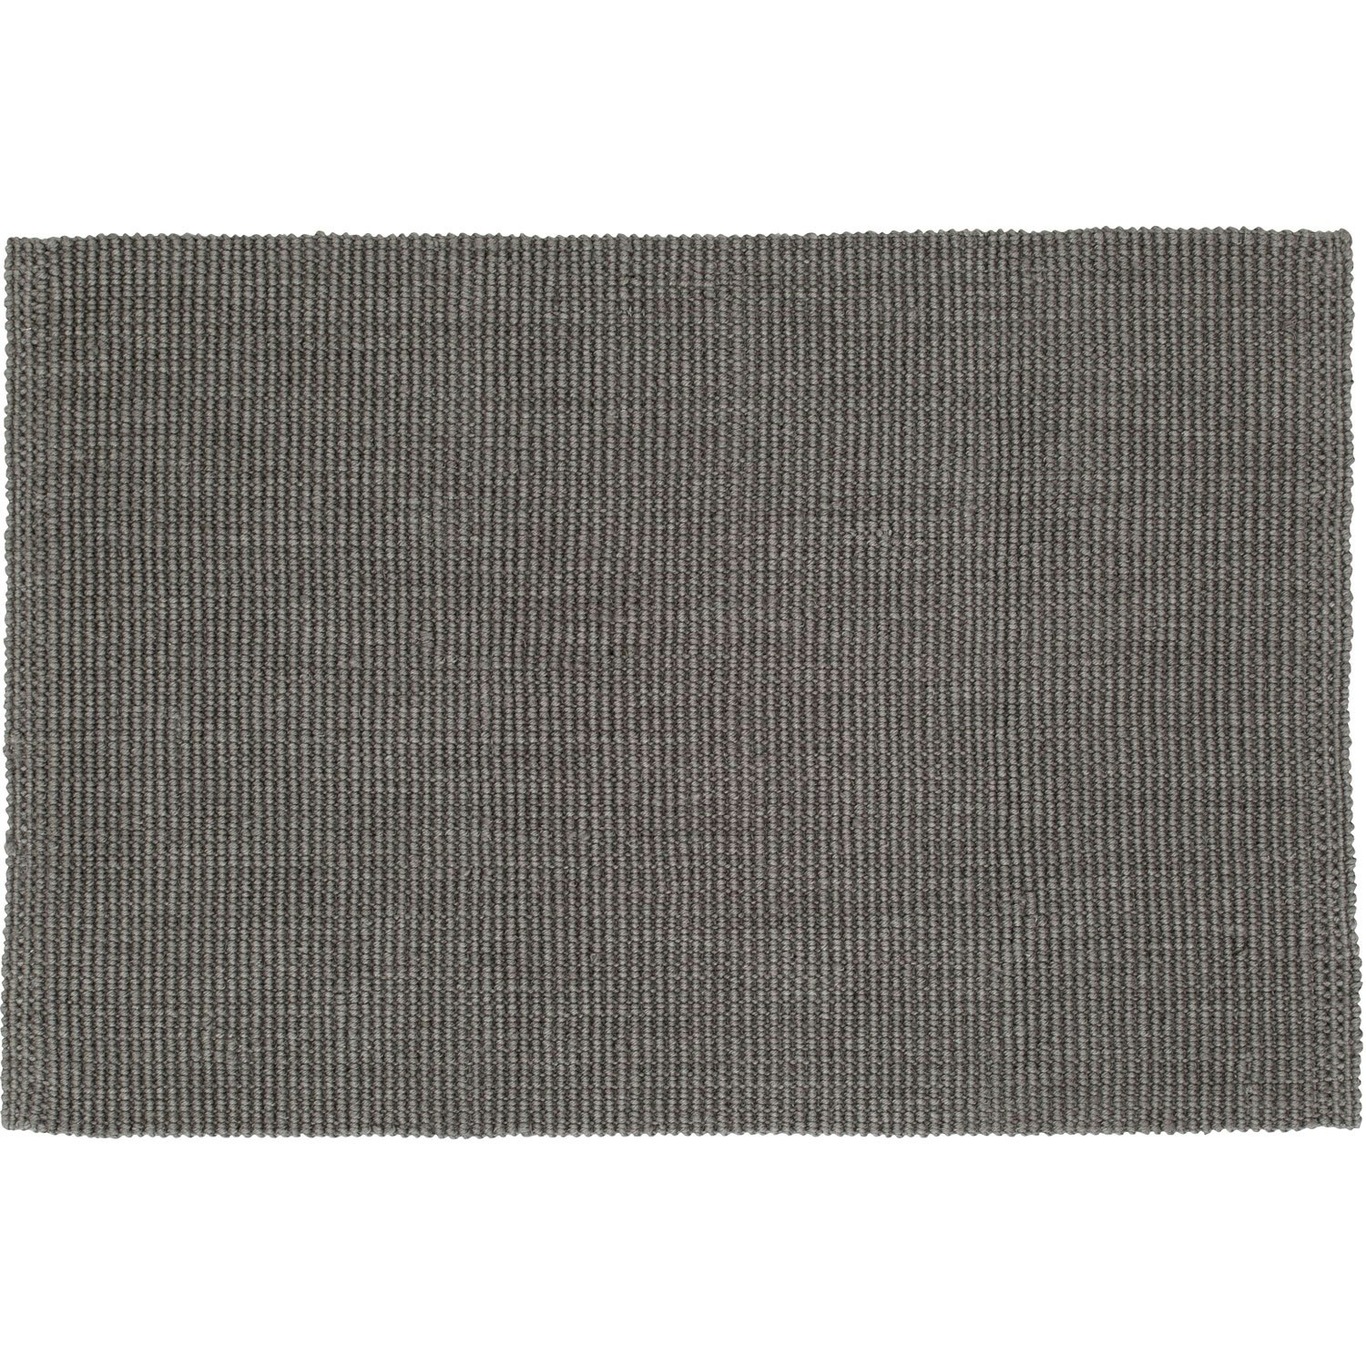 Fiona Ovimatto 60x90 cm, Cement Grey